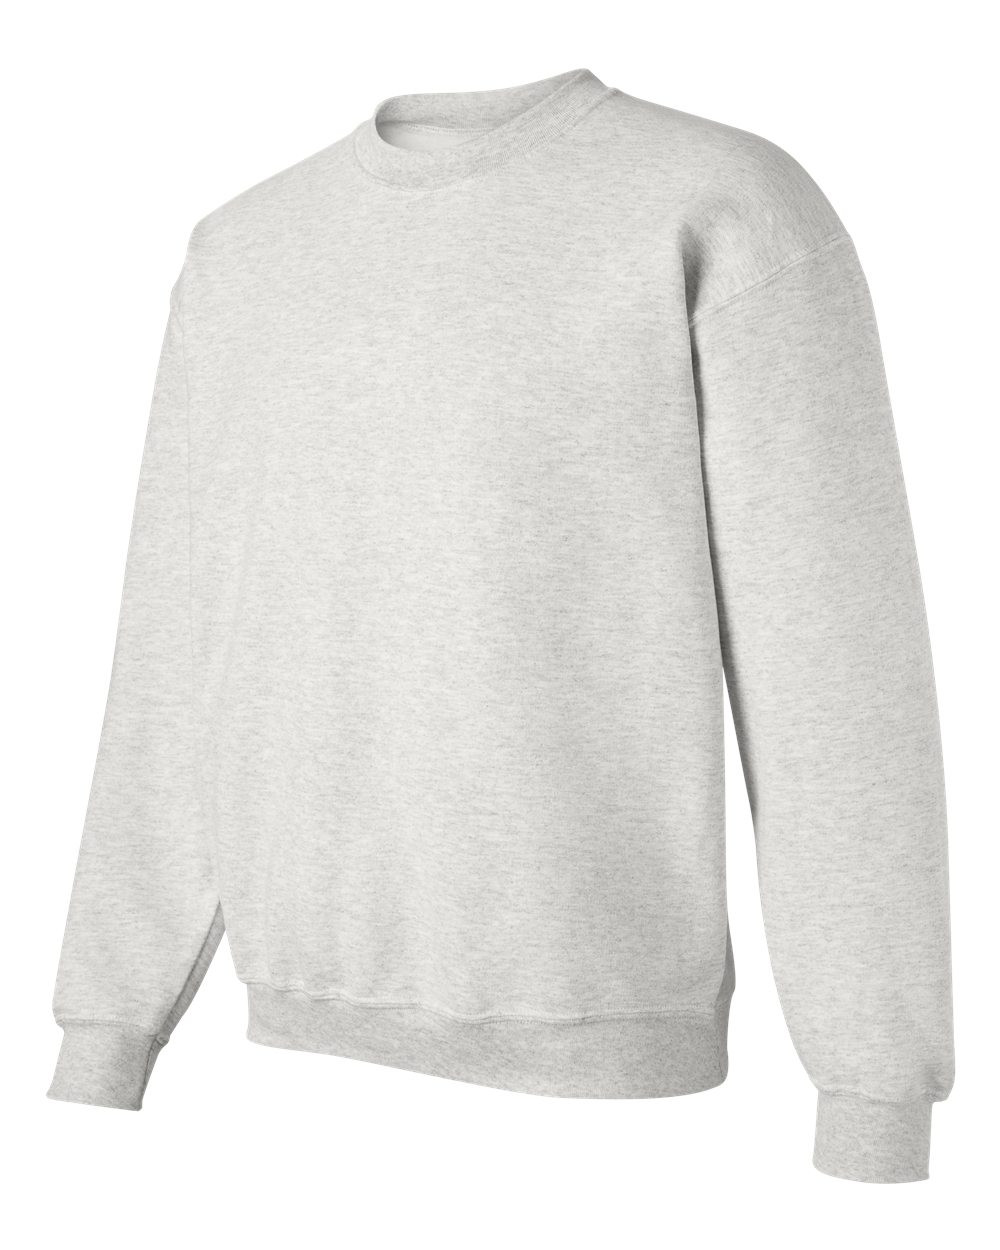 Fleece DryBlend Crewneck Sweatshirt - image 2 of 5